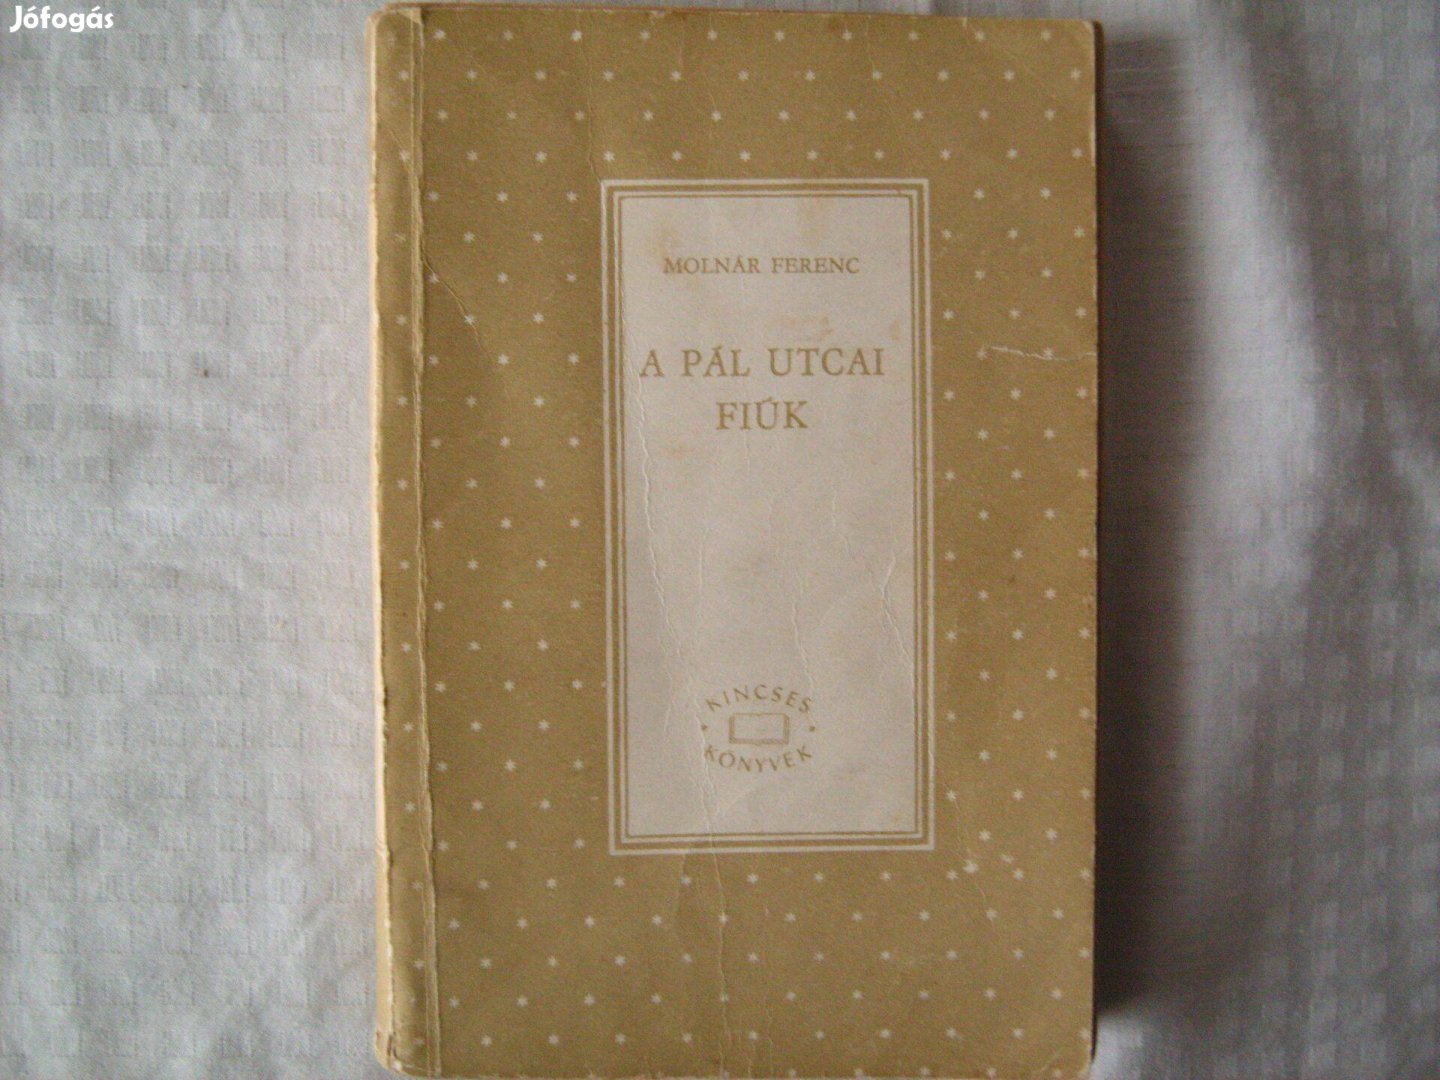 Molnár Ferenc. A Pál utcai fiúk. Régi Kincses Könyvek. 1964